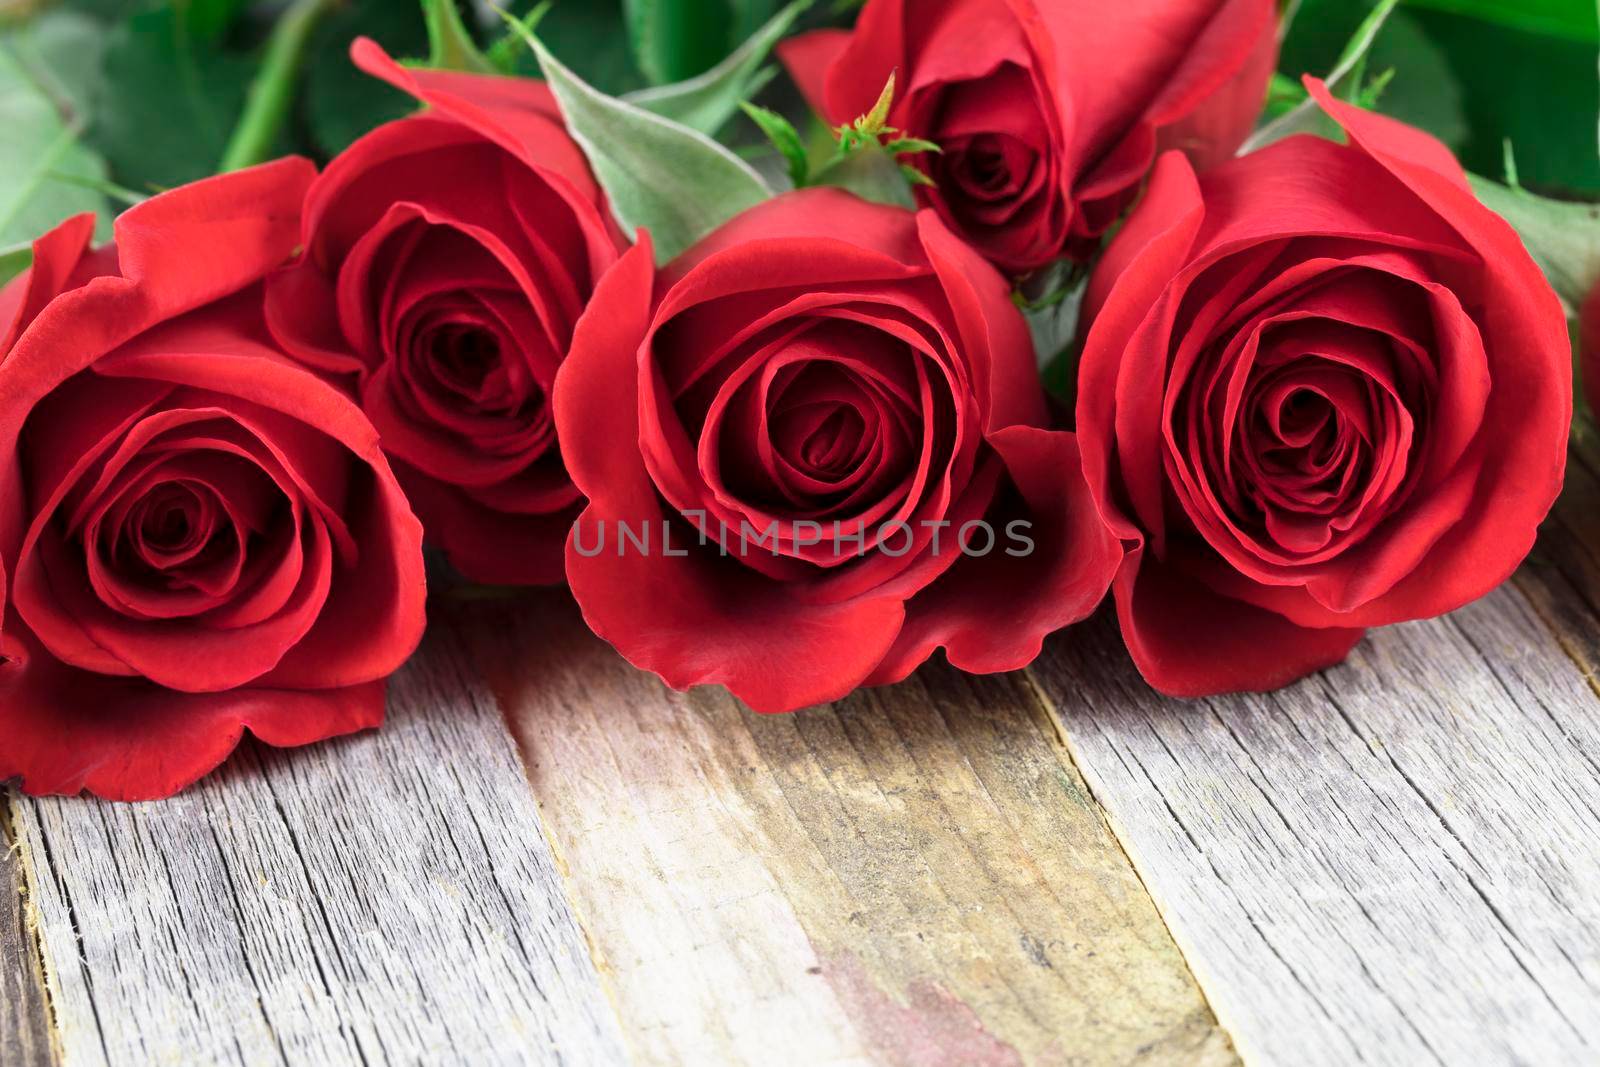 Romantic Red Roses by charlotteLake